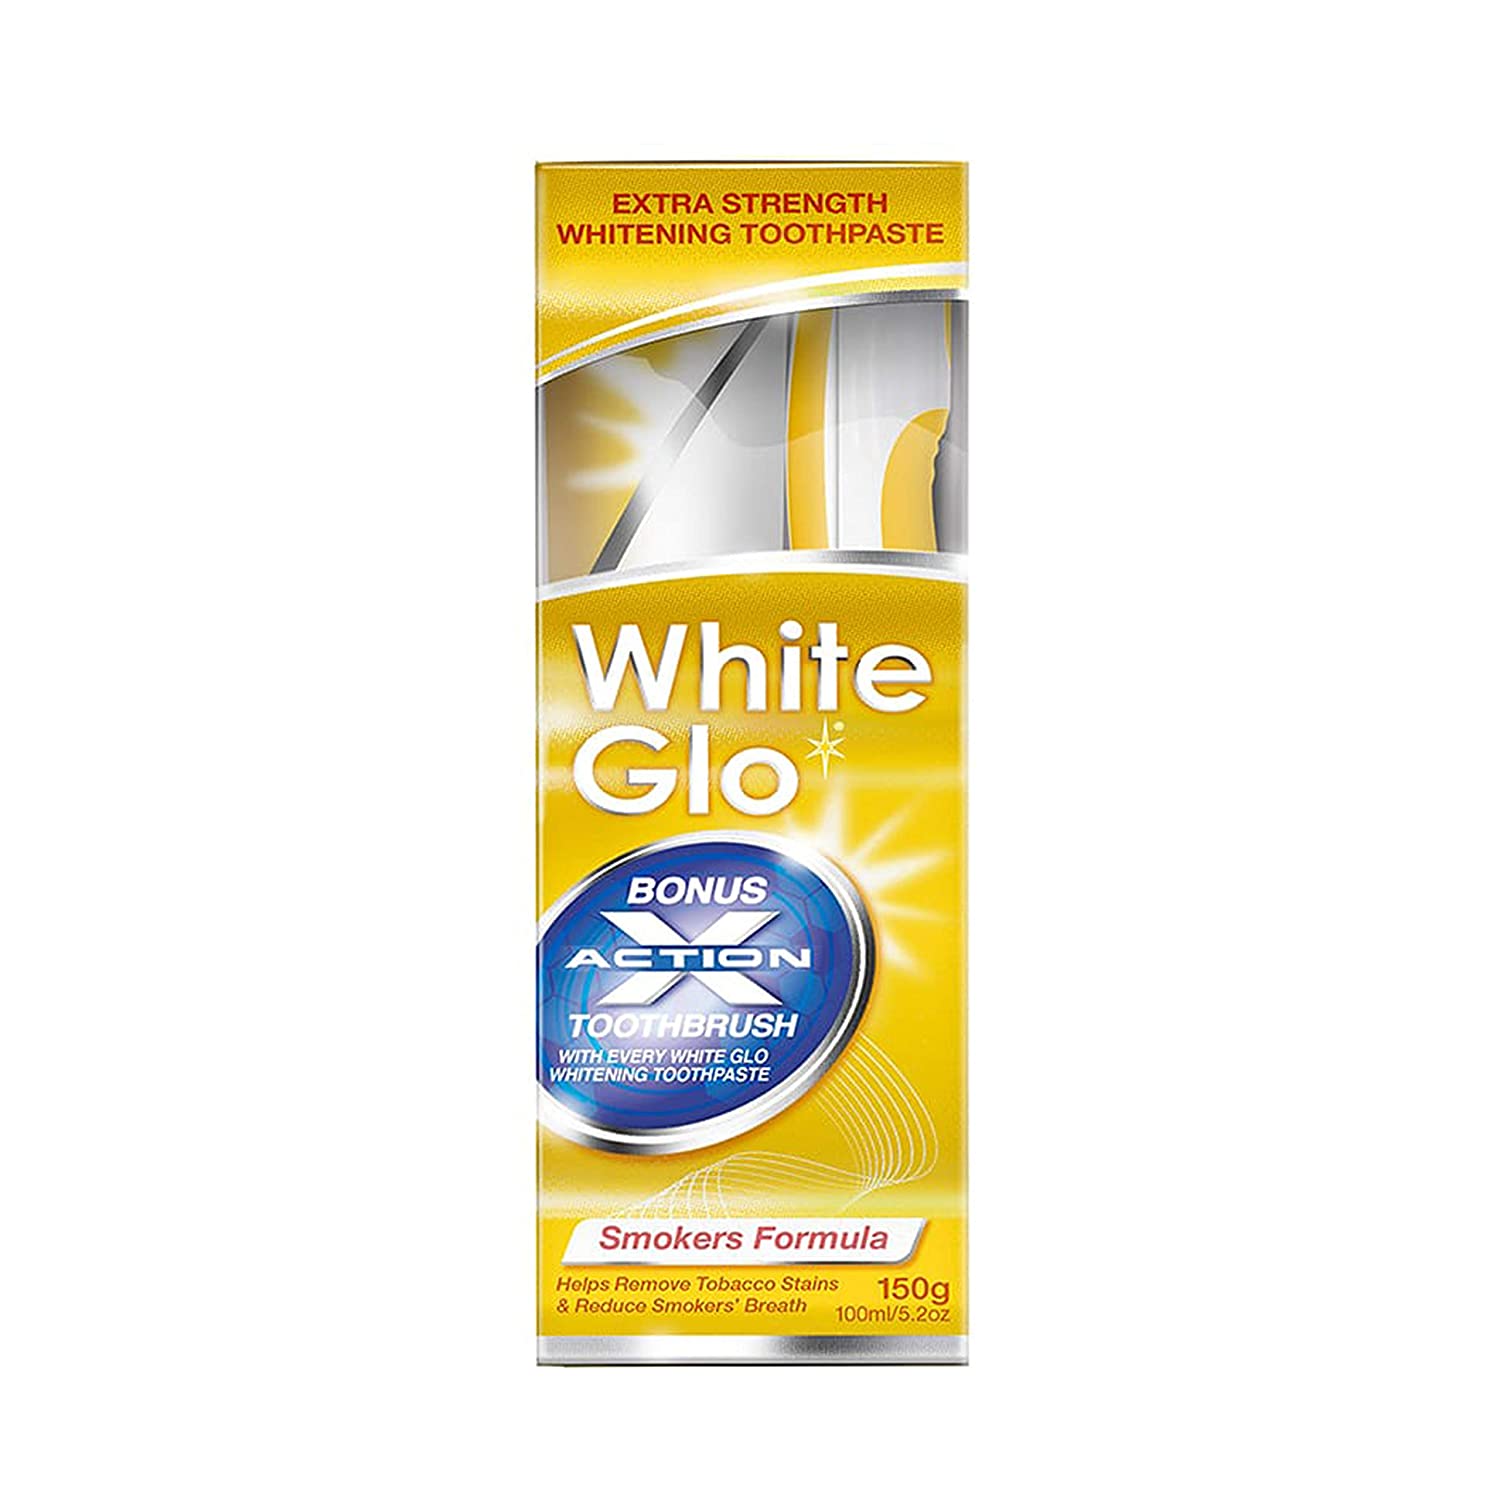 White Glo Whitening Toothpaste 150G - Smokers Formula